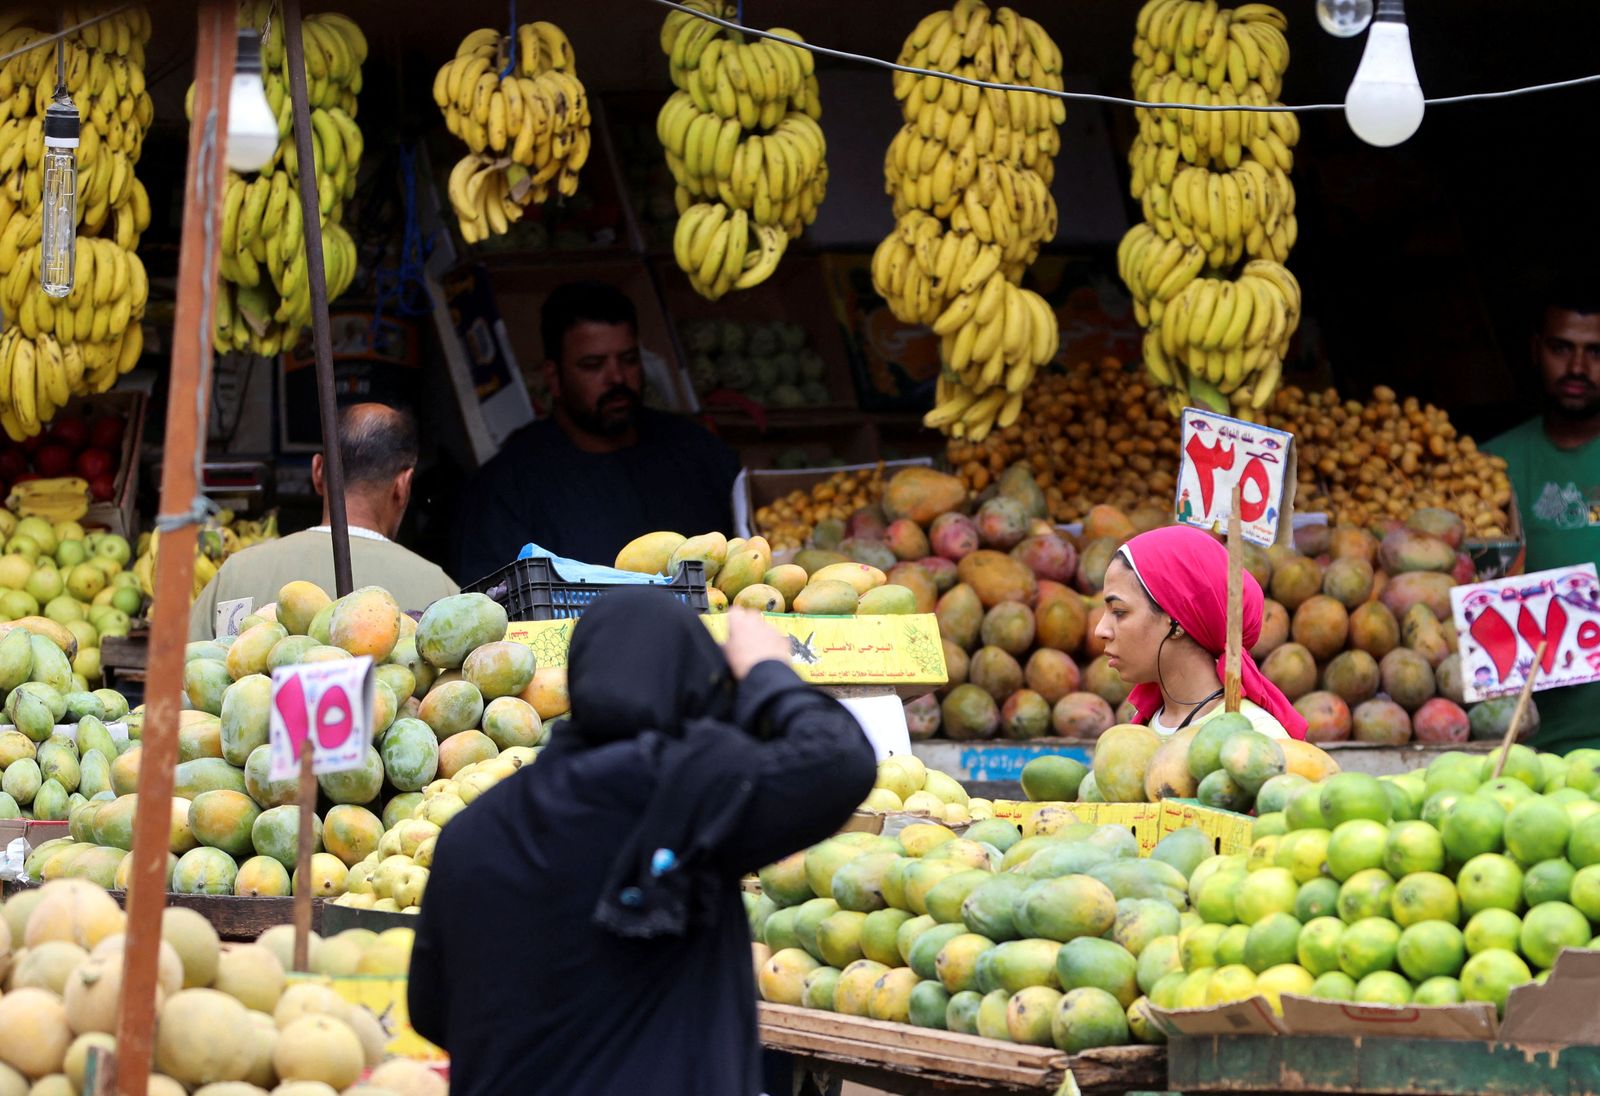 الغذاء يقفز مجدداً بالتضخم في مدن مصر ليسجل 38% في سبتمبر" width="252" height="168" loading="lazy